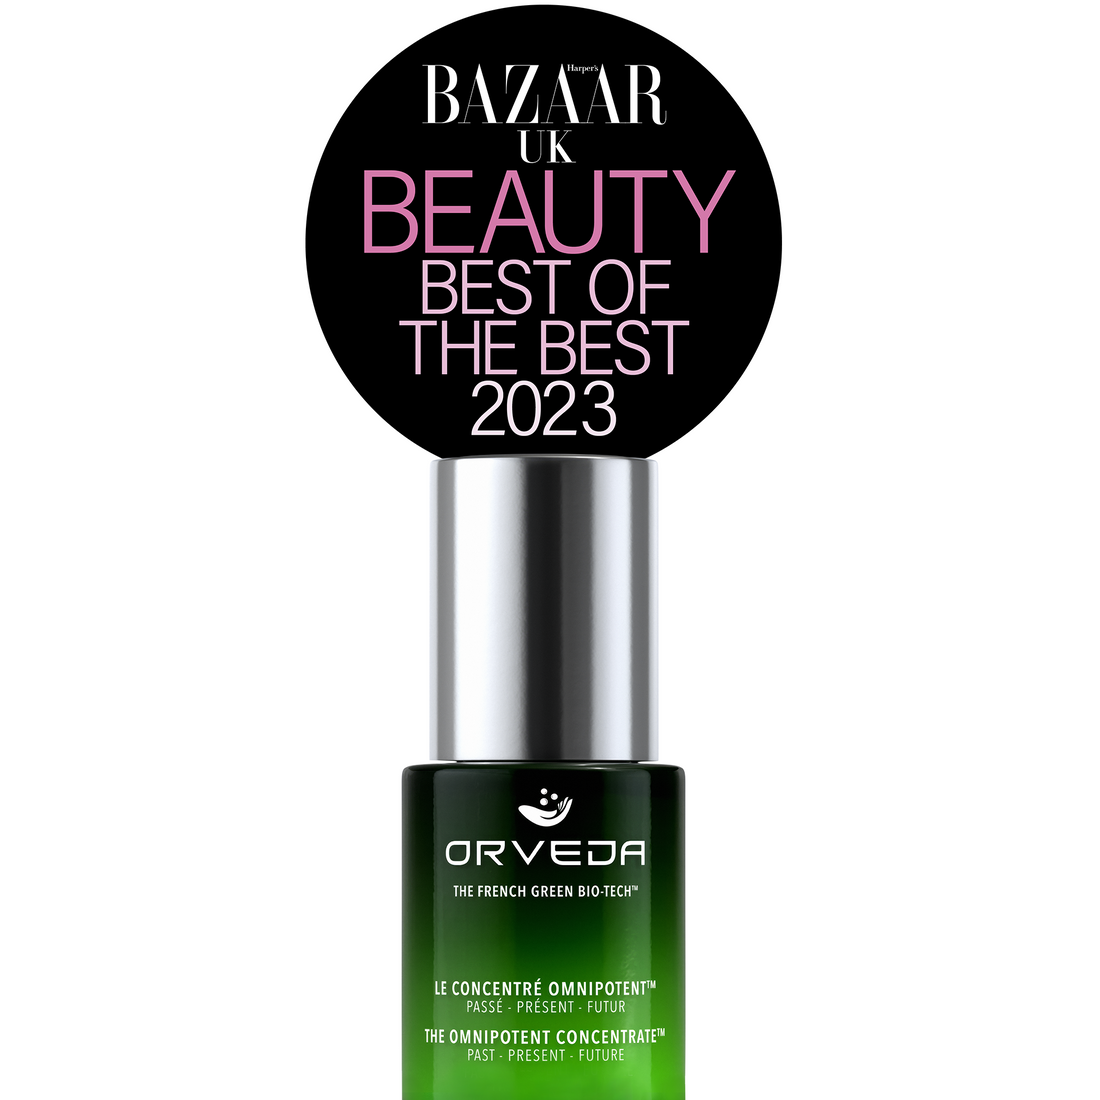 Orveda's Omnipotent Concentrate wins Harper's Bazaar UK Best of Beauty Award 2023